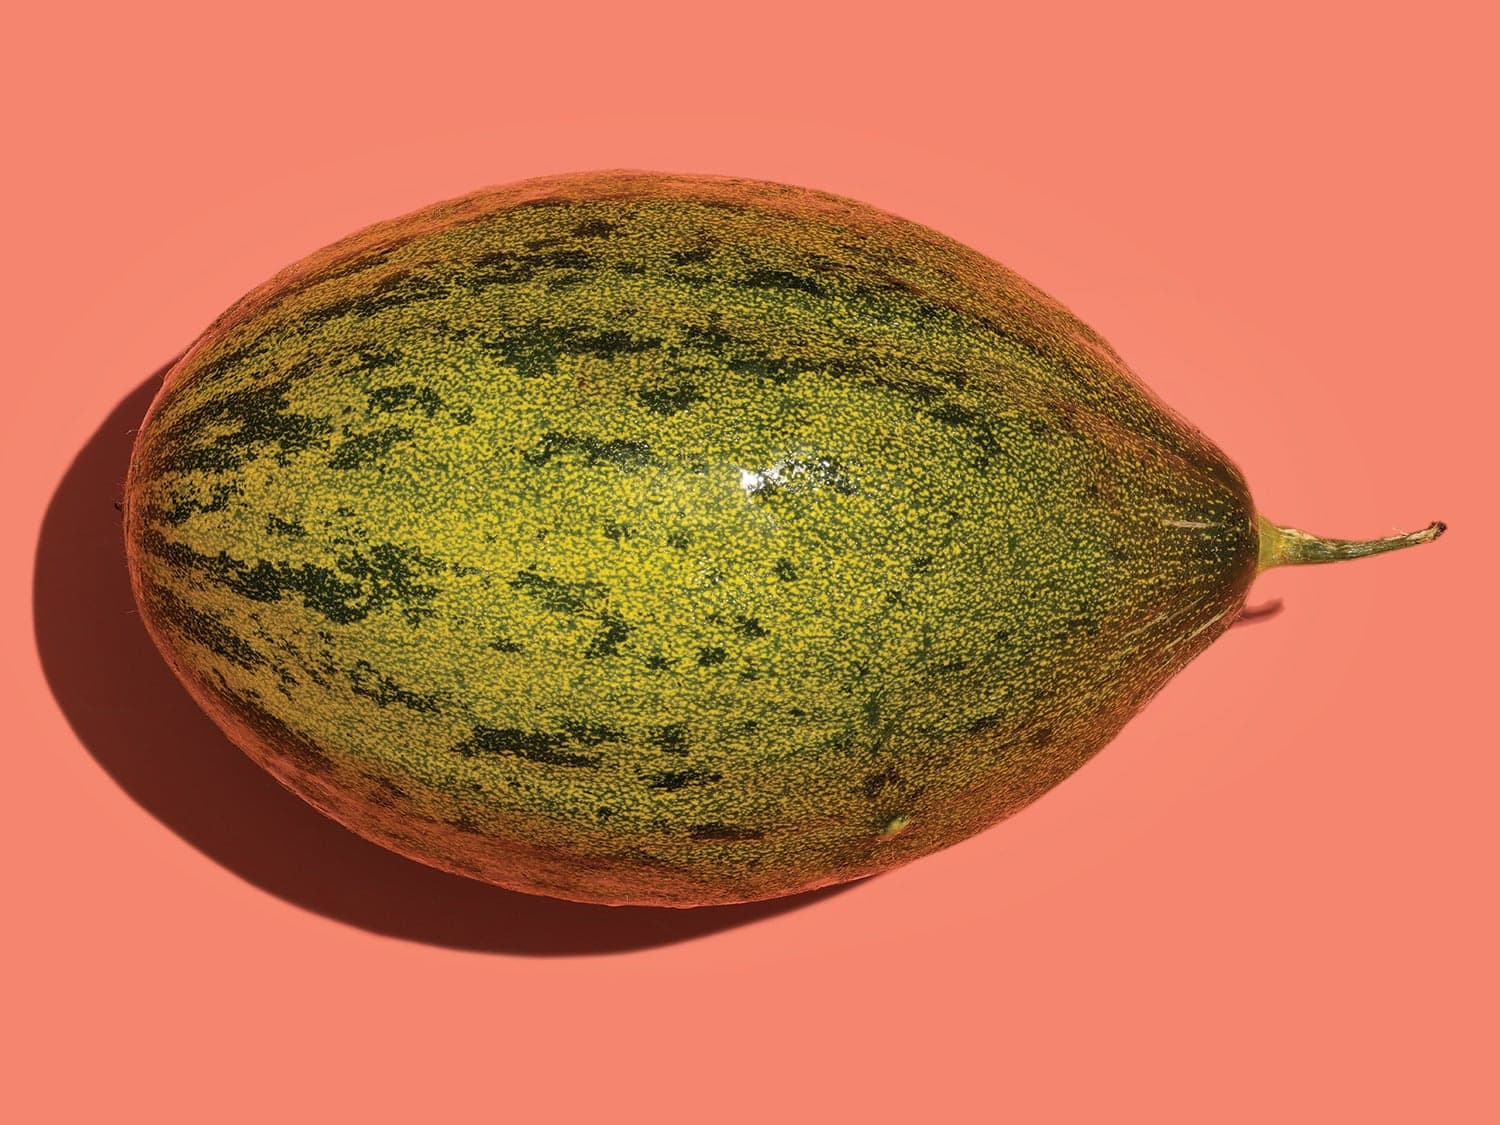 Piel de Sapo Melons